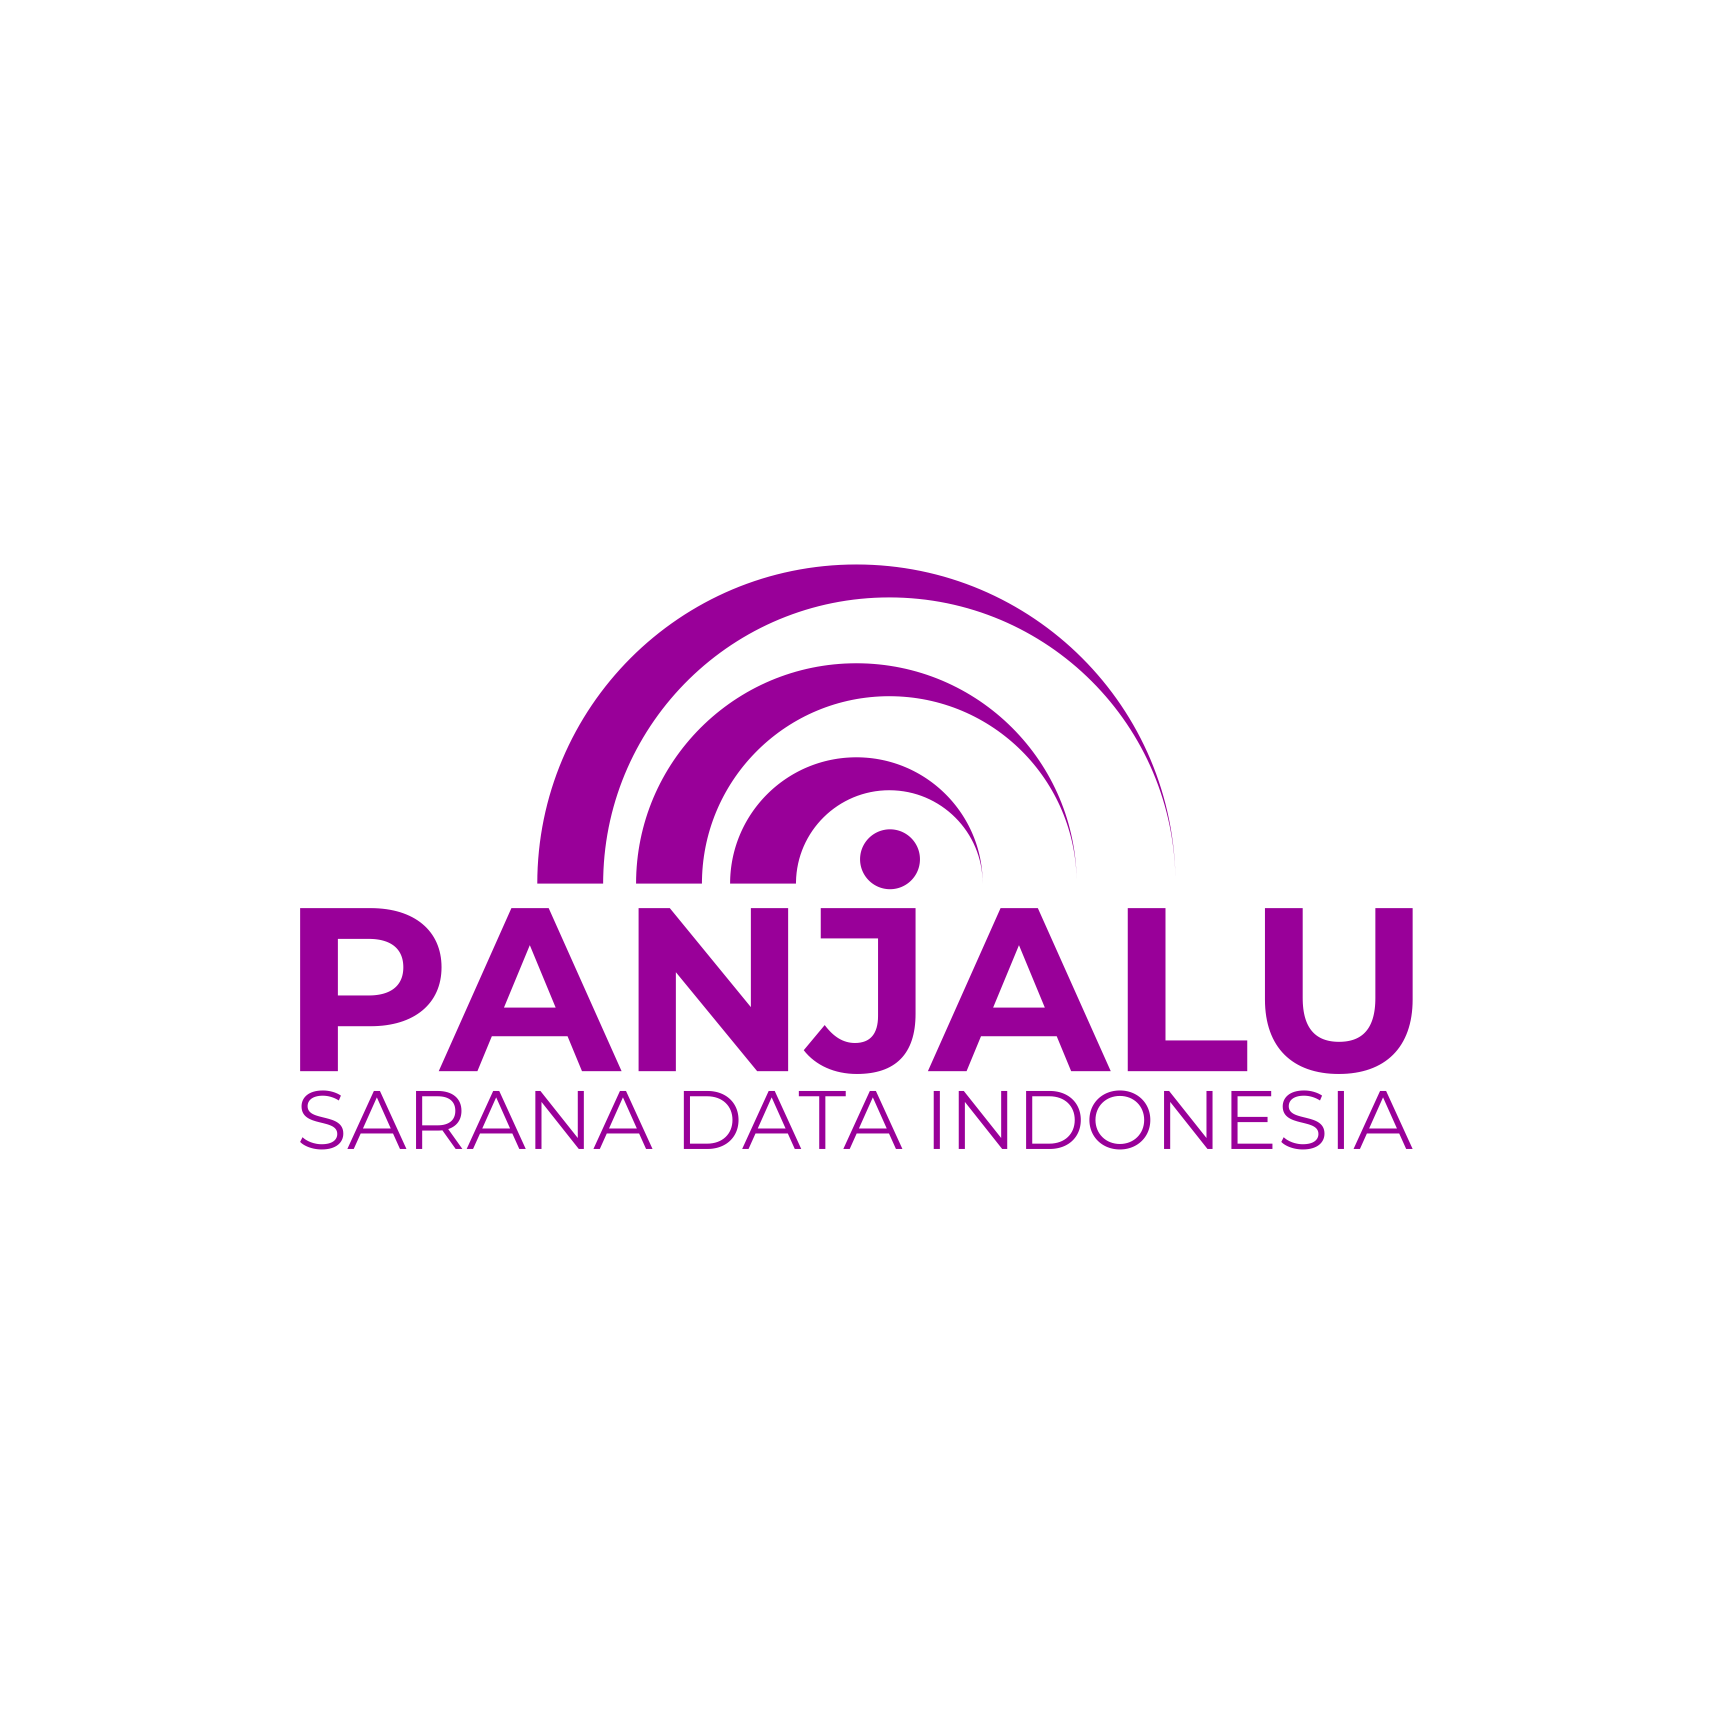 PT PANJALU SARANA DATA INDONESIA